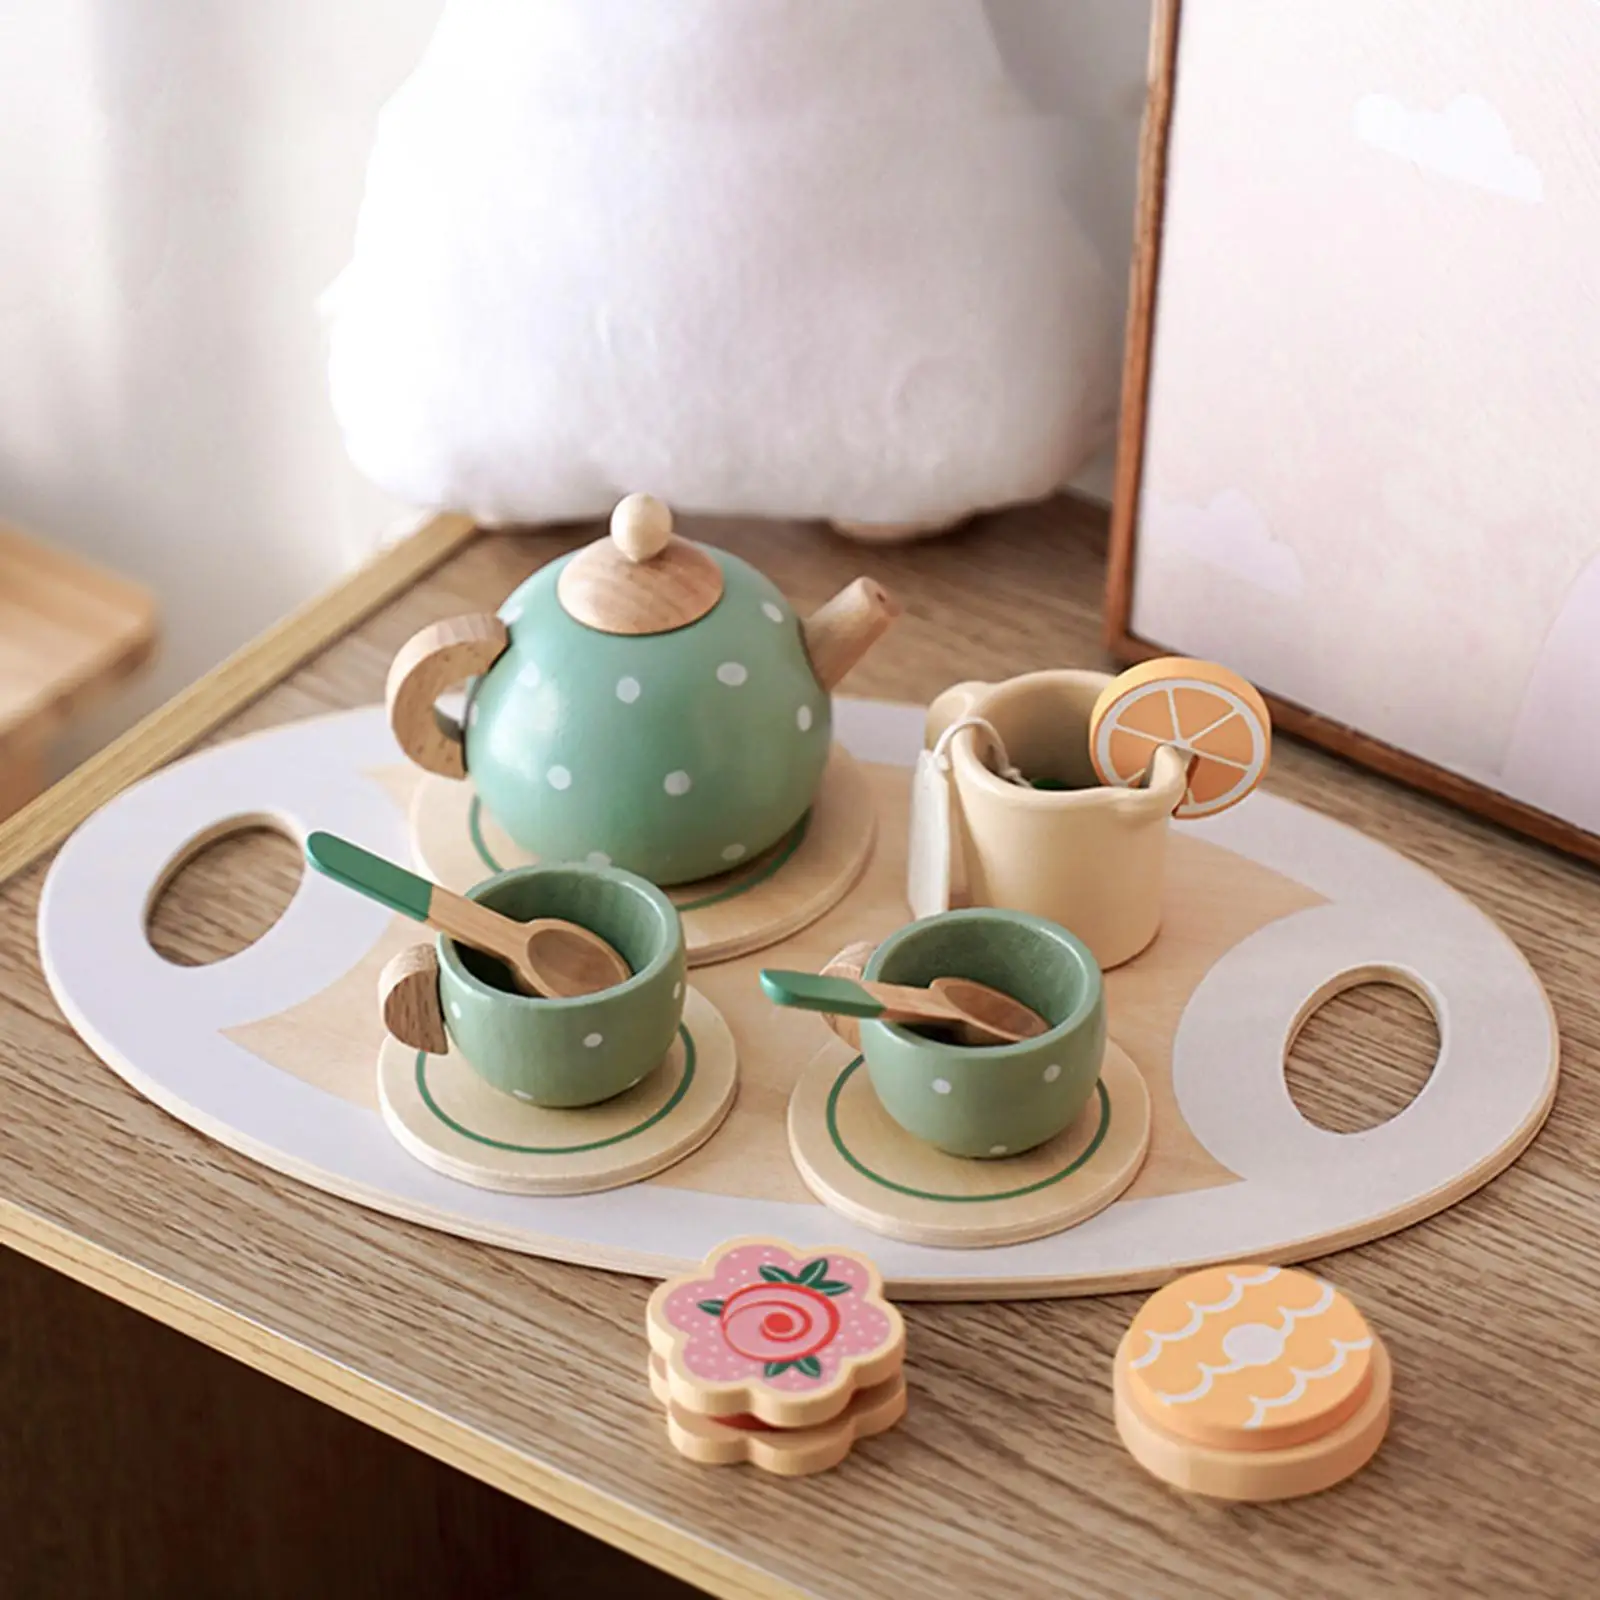 15 Pieces Kitchen Tableware Set Wooden Handiccraft Toy for Birthday Gift